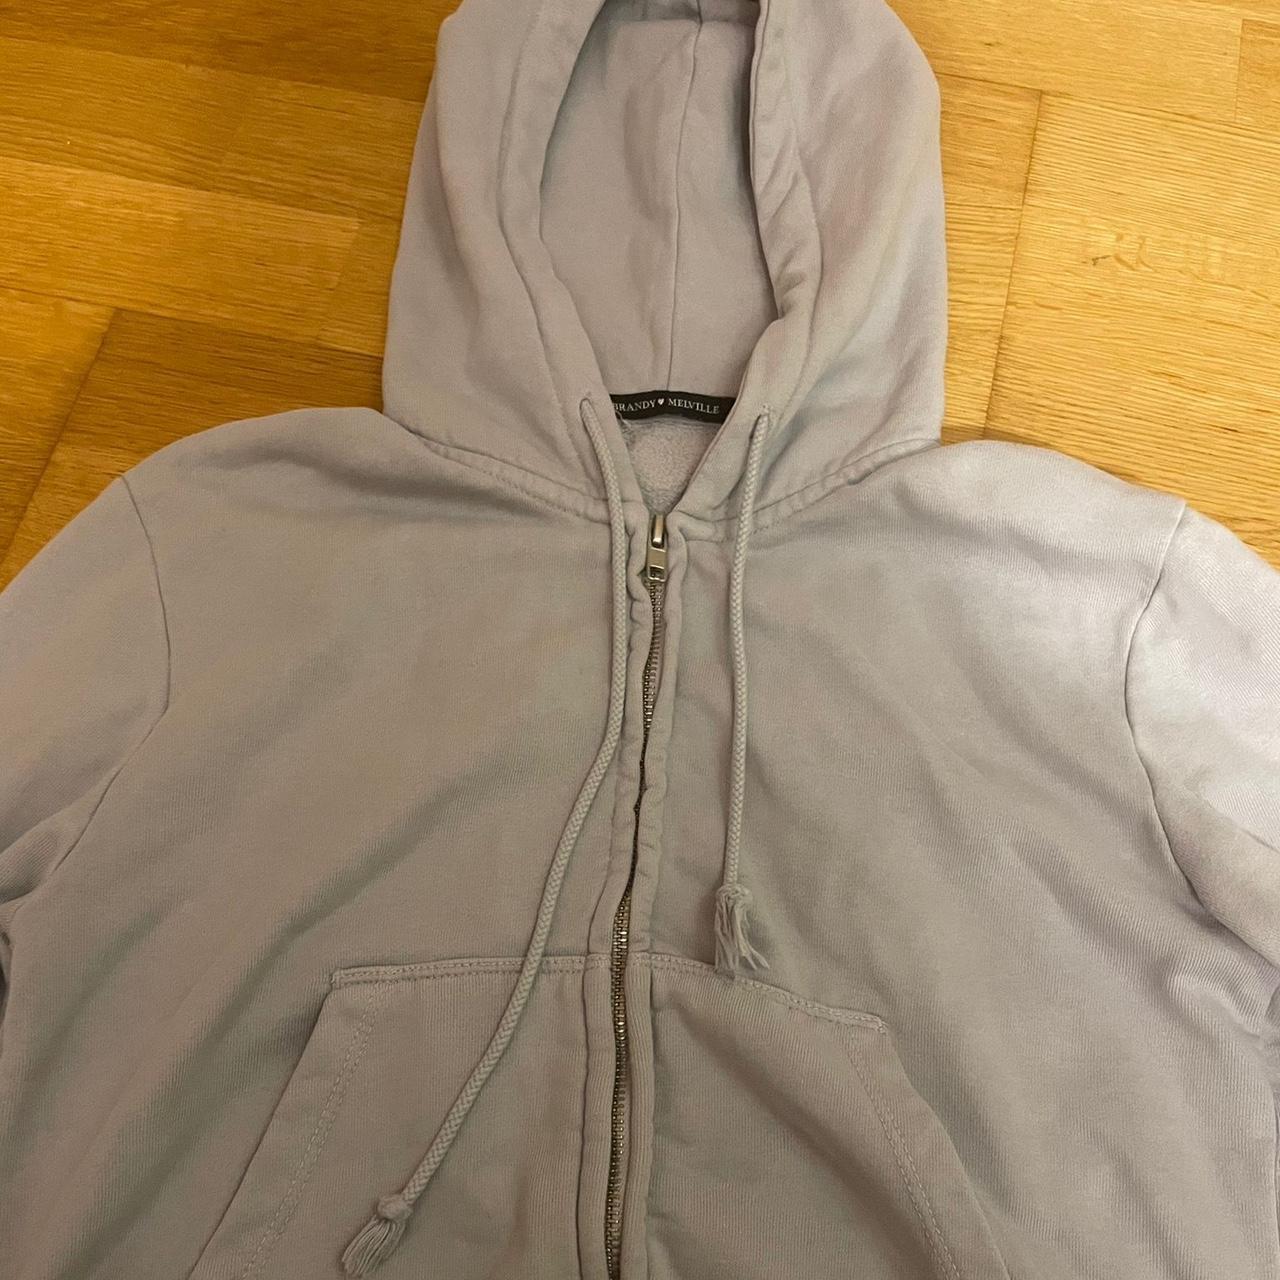 ♡grey cropped zip up hoodie 🇮🇹 felpa zip up corta... - Depop